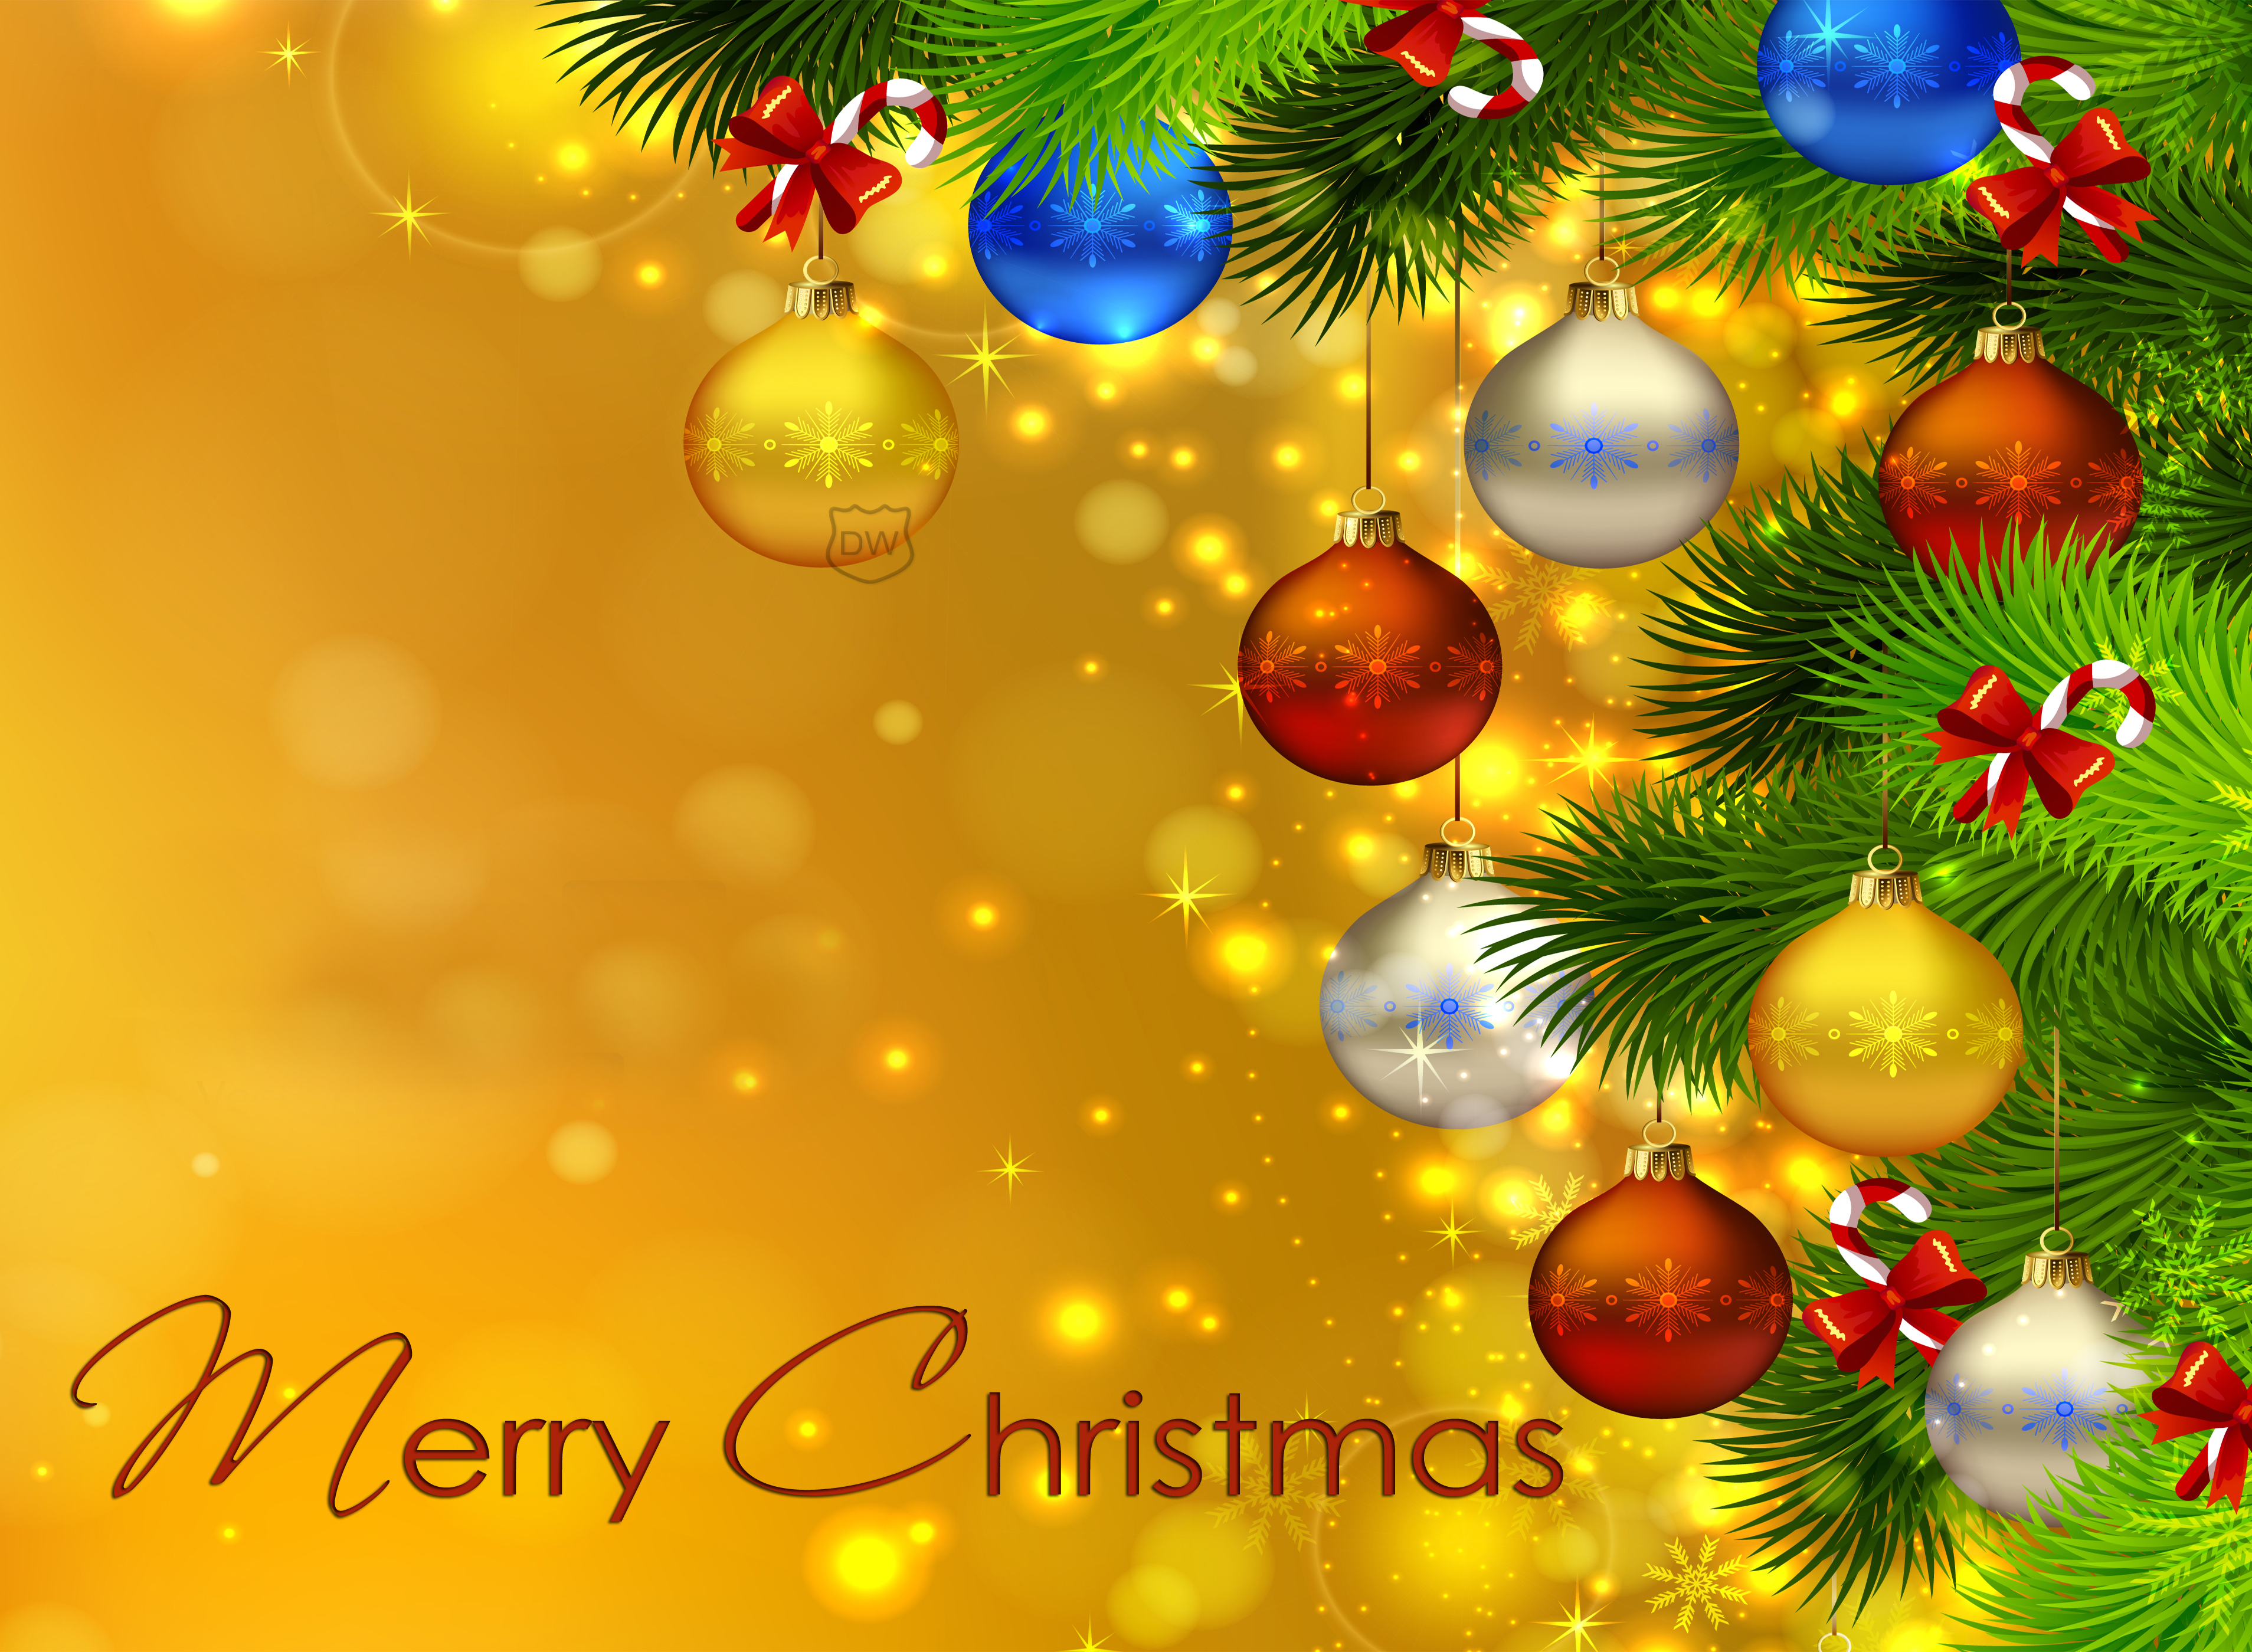 メリークリスマスフルhd壁紙,クリスマスツリー,クリスマスオーナメント,クリスマスの飾り,クリスマス,木